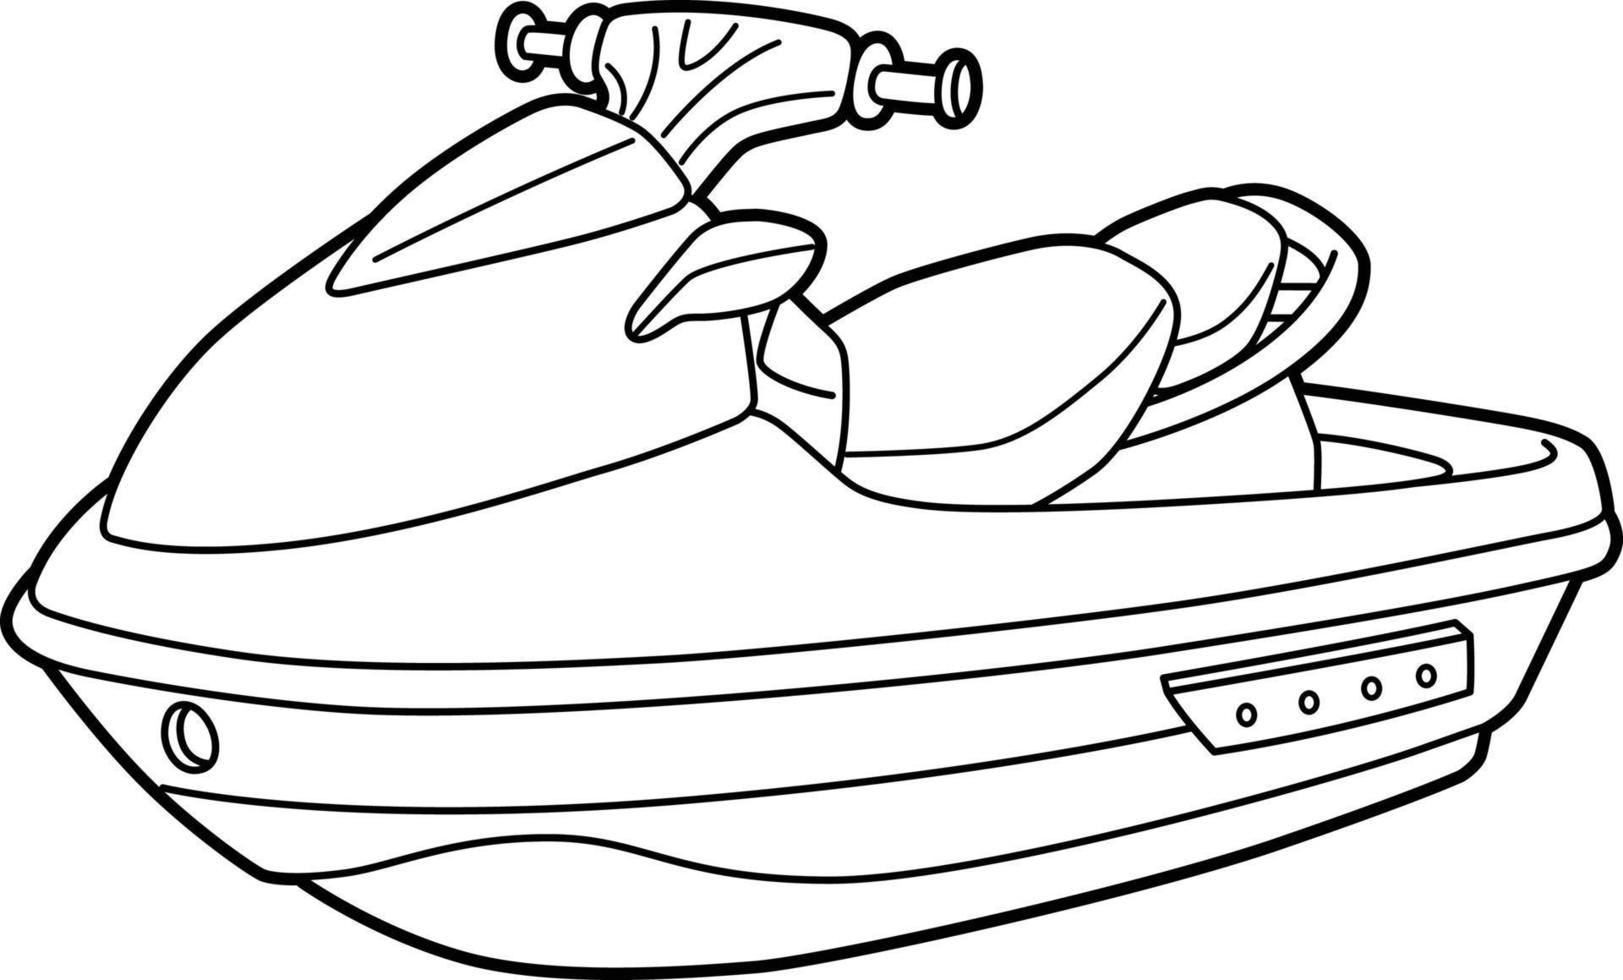 Página para colorear de vehículos de motos acuáticas para niños 10002623  Vector en Vecteezy